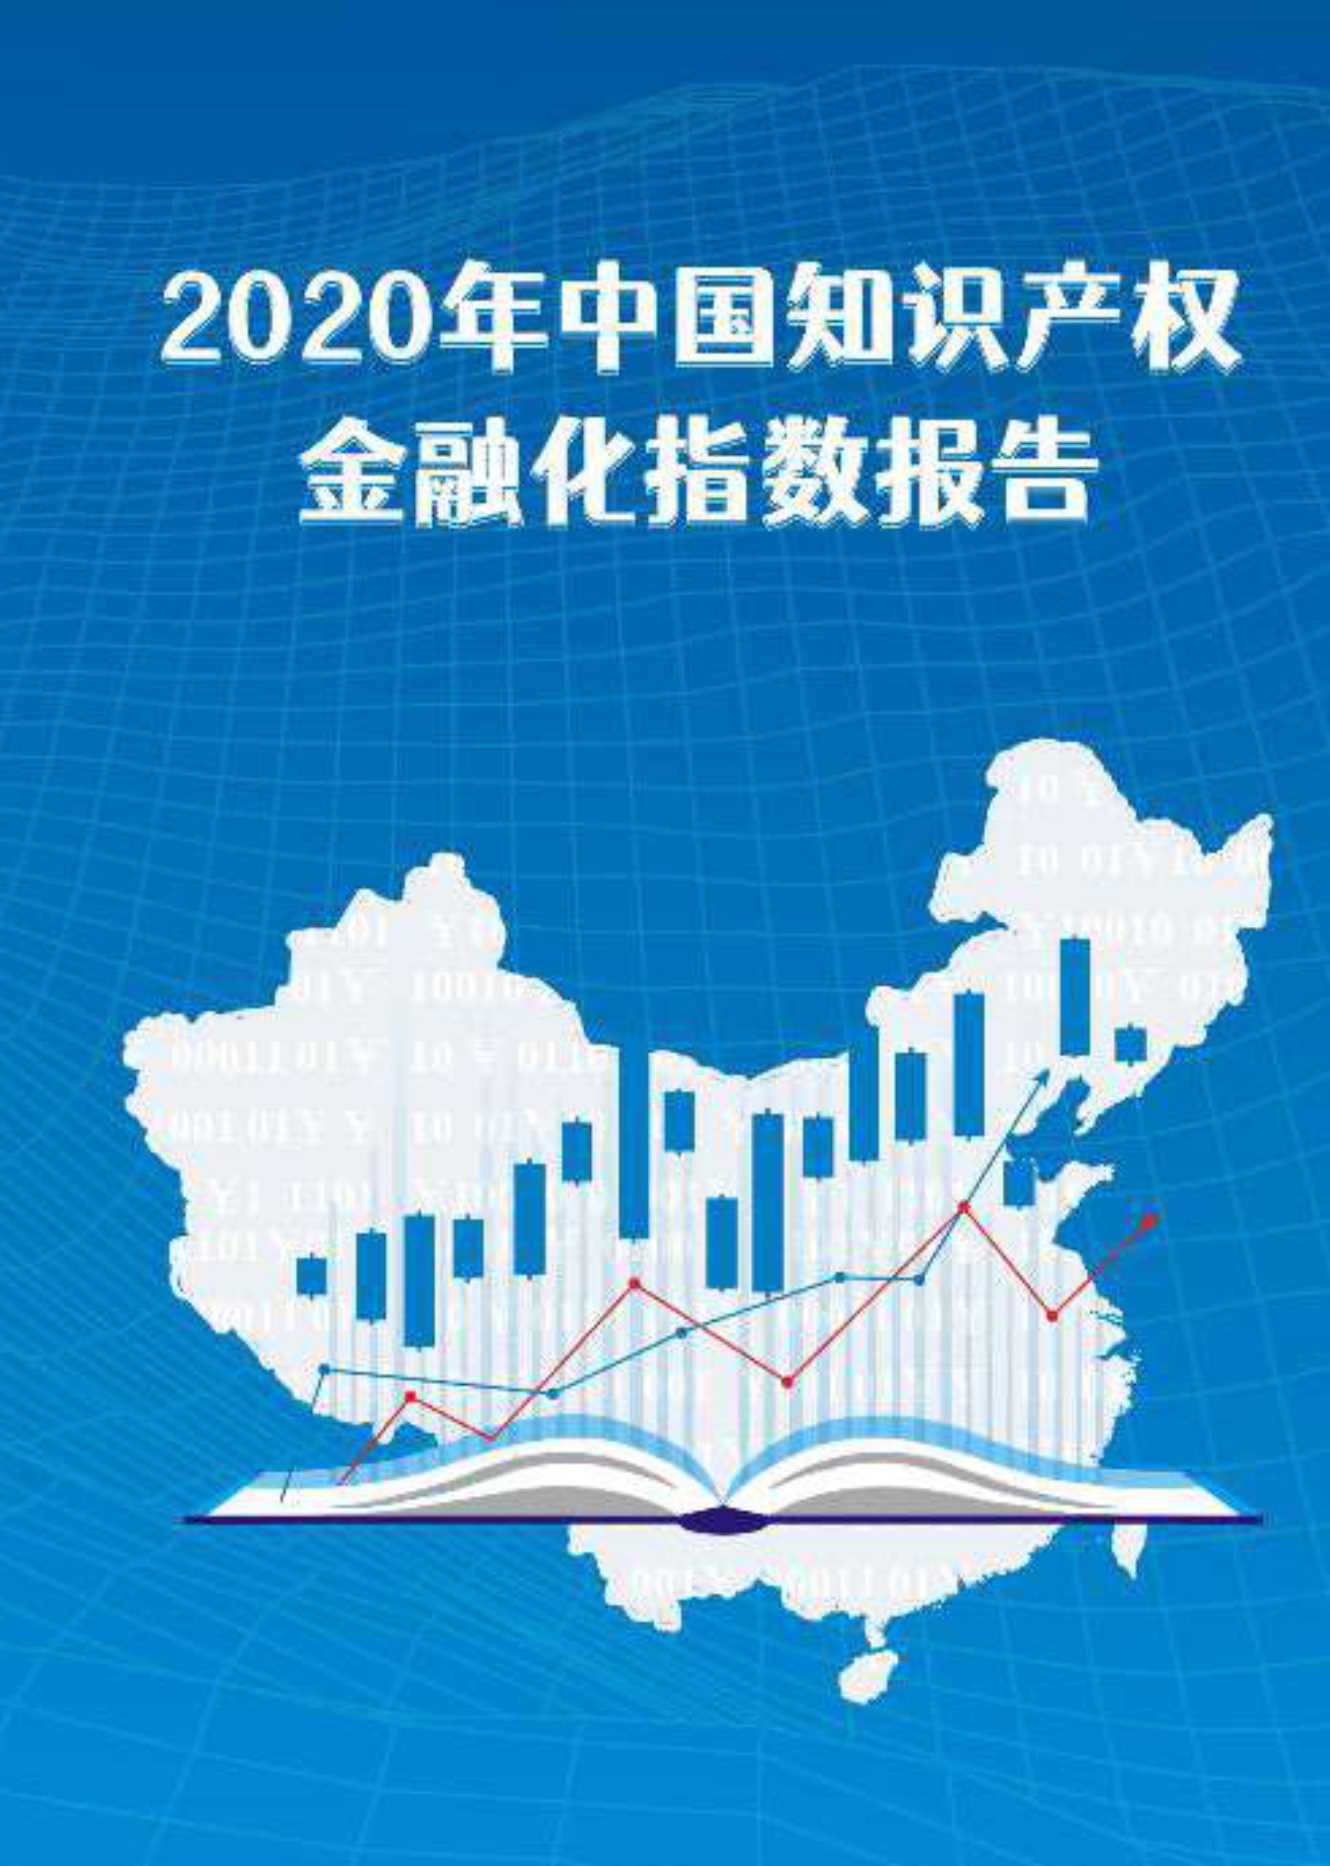 广州知识产权交易中心-2020年中国知识产权金融化指数报告——精简版-2021.07-89页